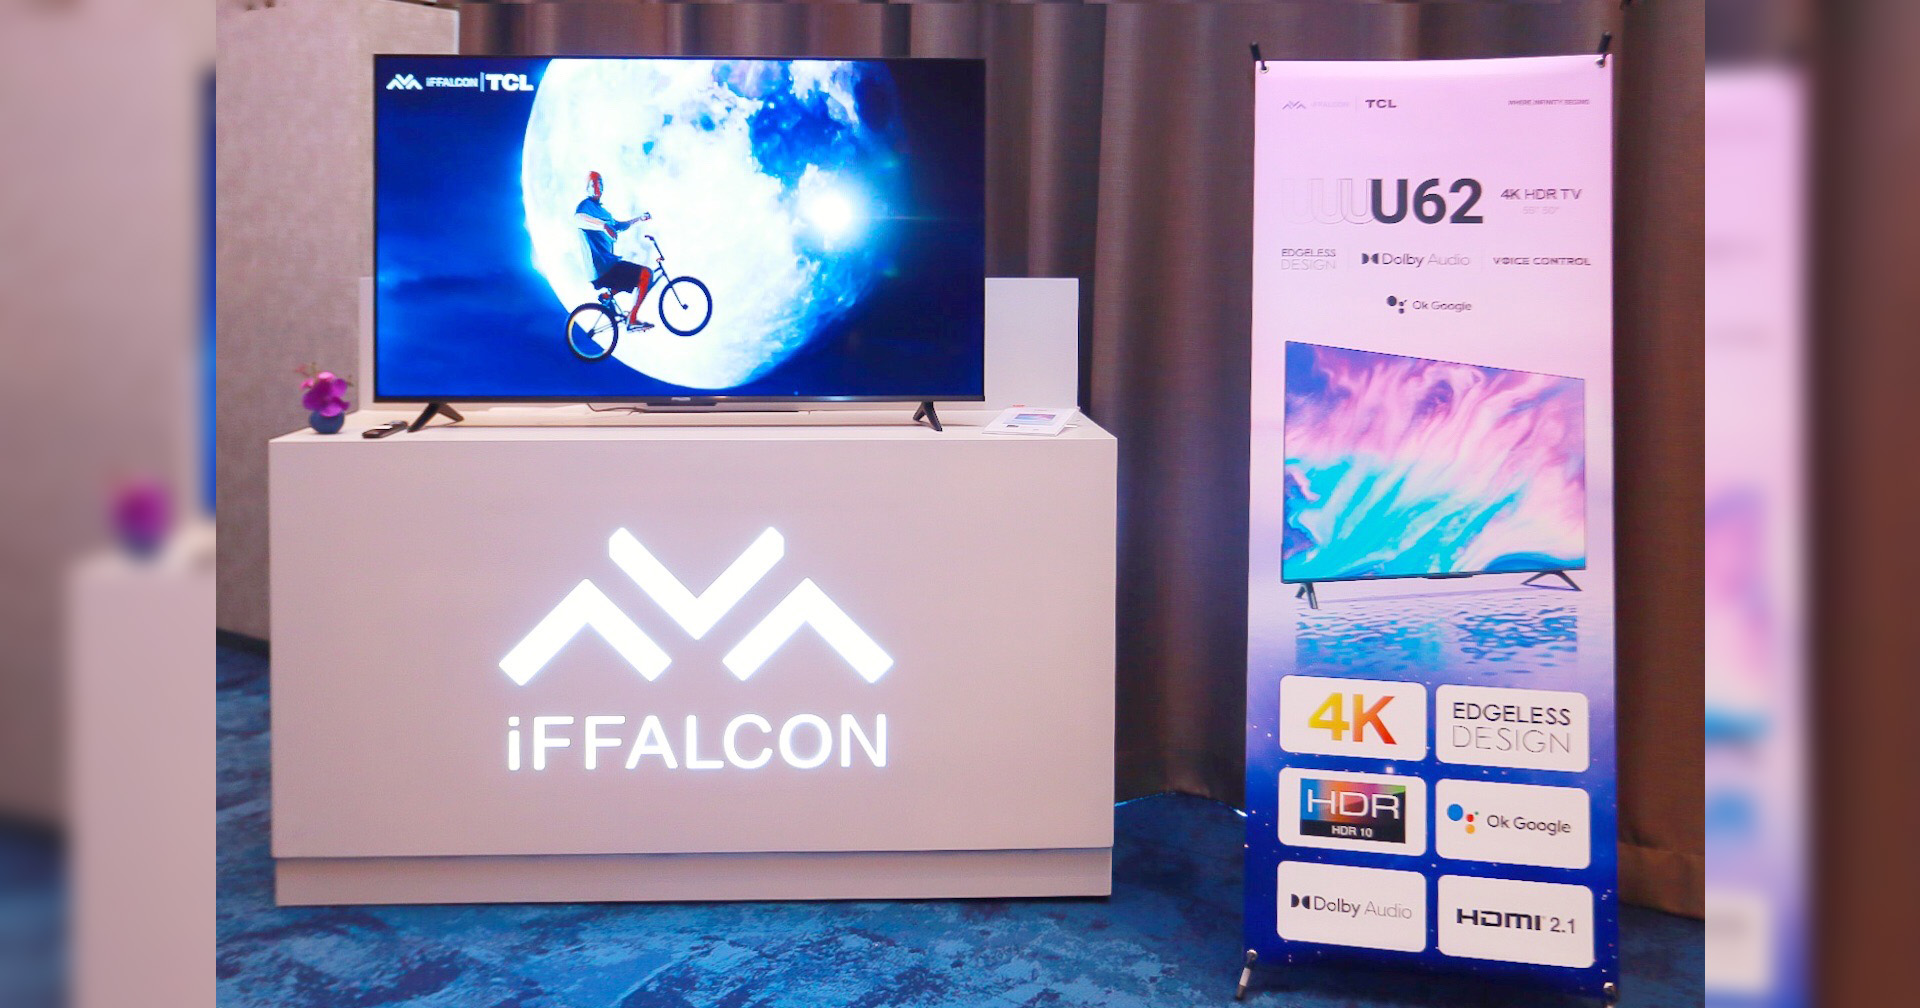 iFFALCON เปิดตัว Google TV ระดับ 4K HDR รุ่นล่าสุด ตั้งเป้าเป็นผลิตภัณฑ์คุณภาพสูงในราคาที่สามารถแข่งขันได้